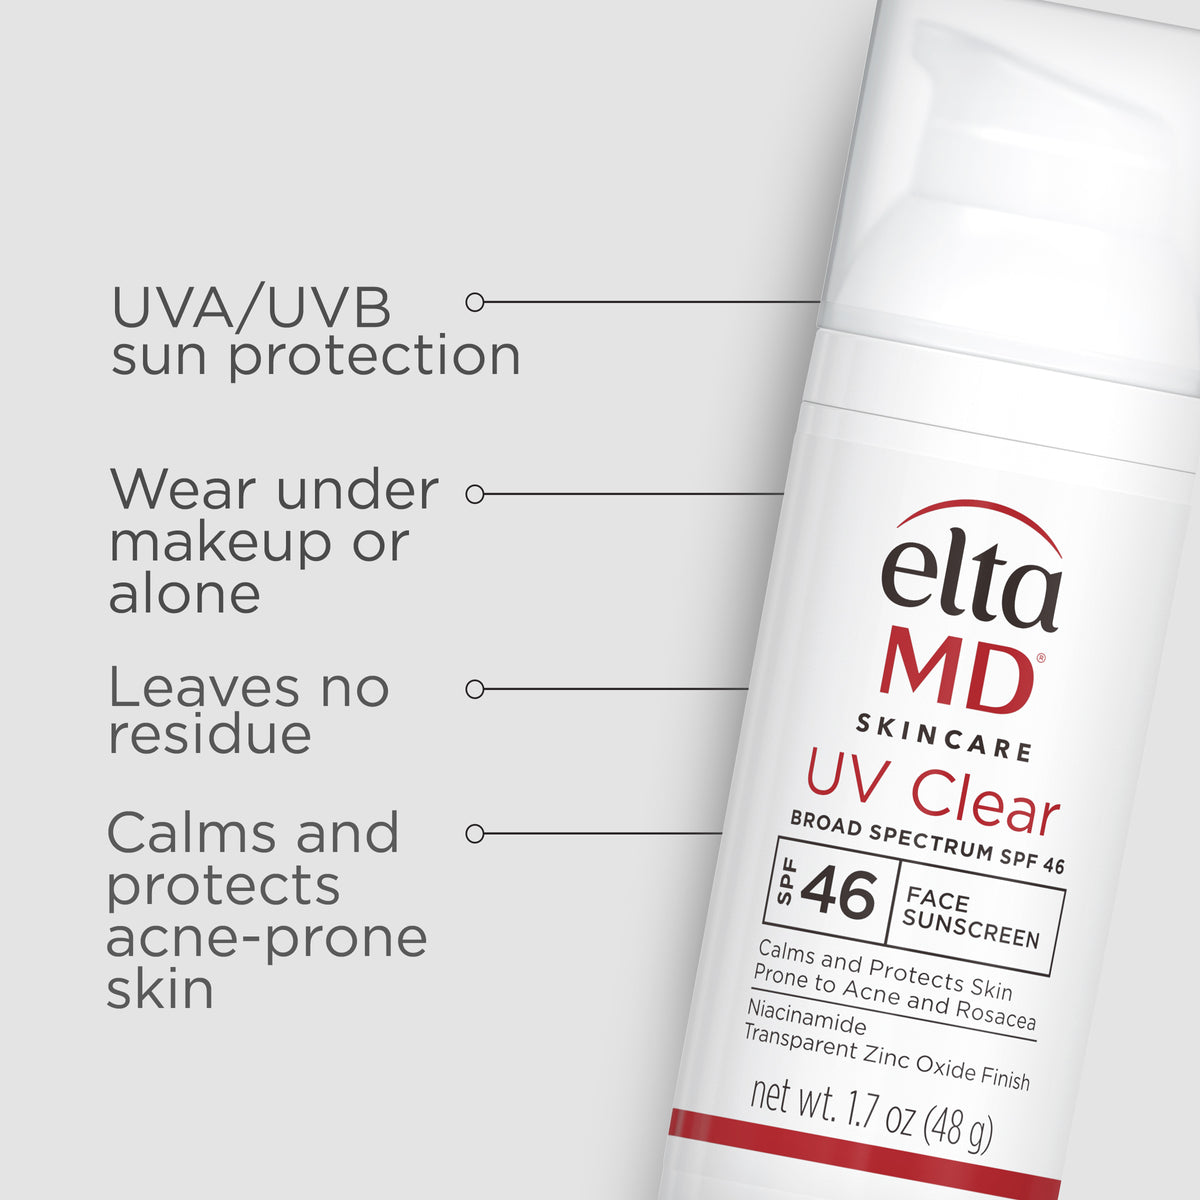 eltaMD UV clear: a sunscreen SPF 46